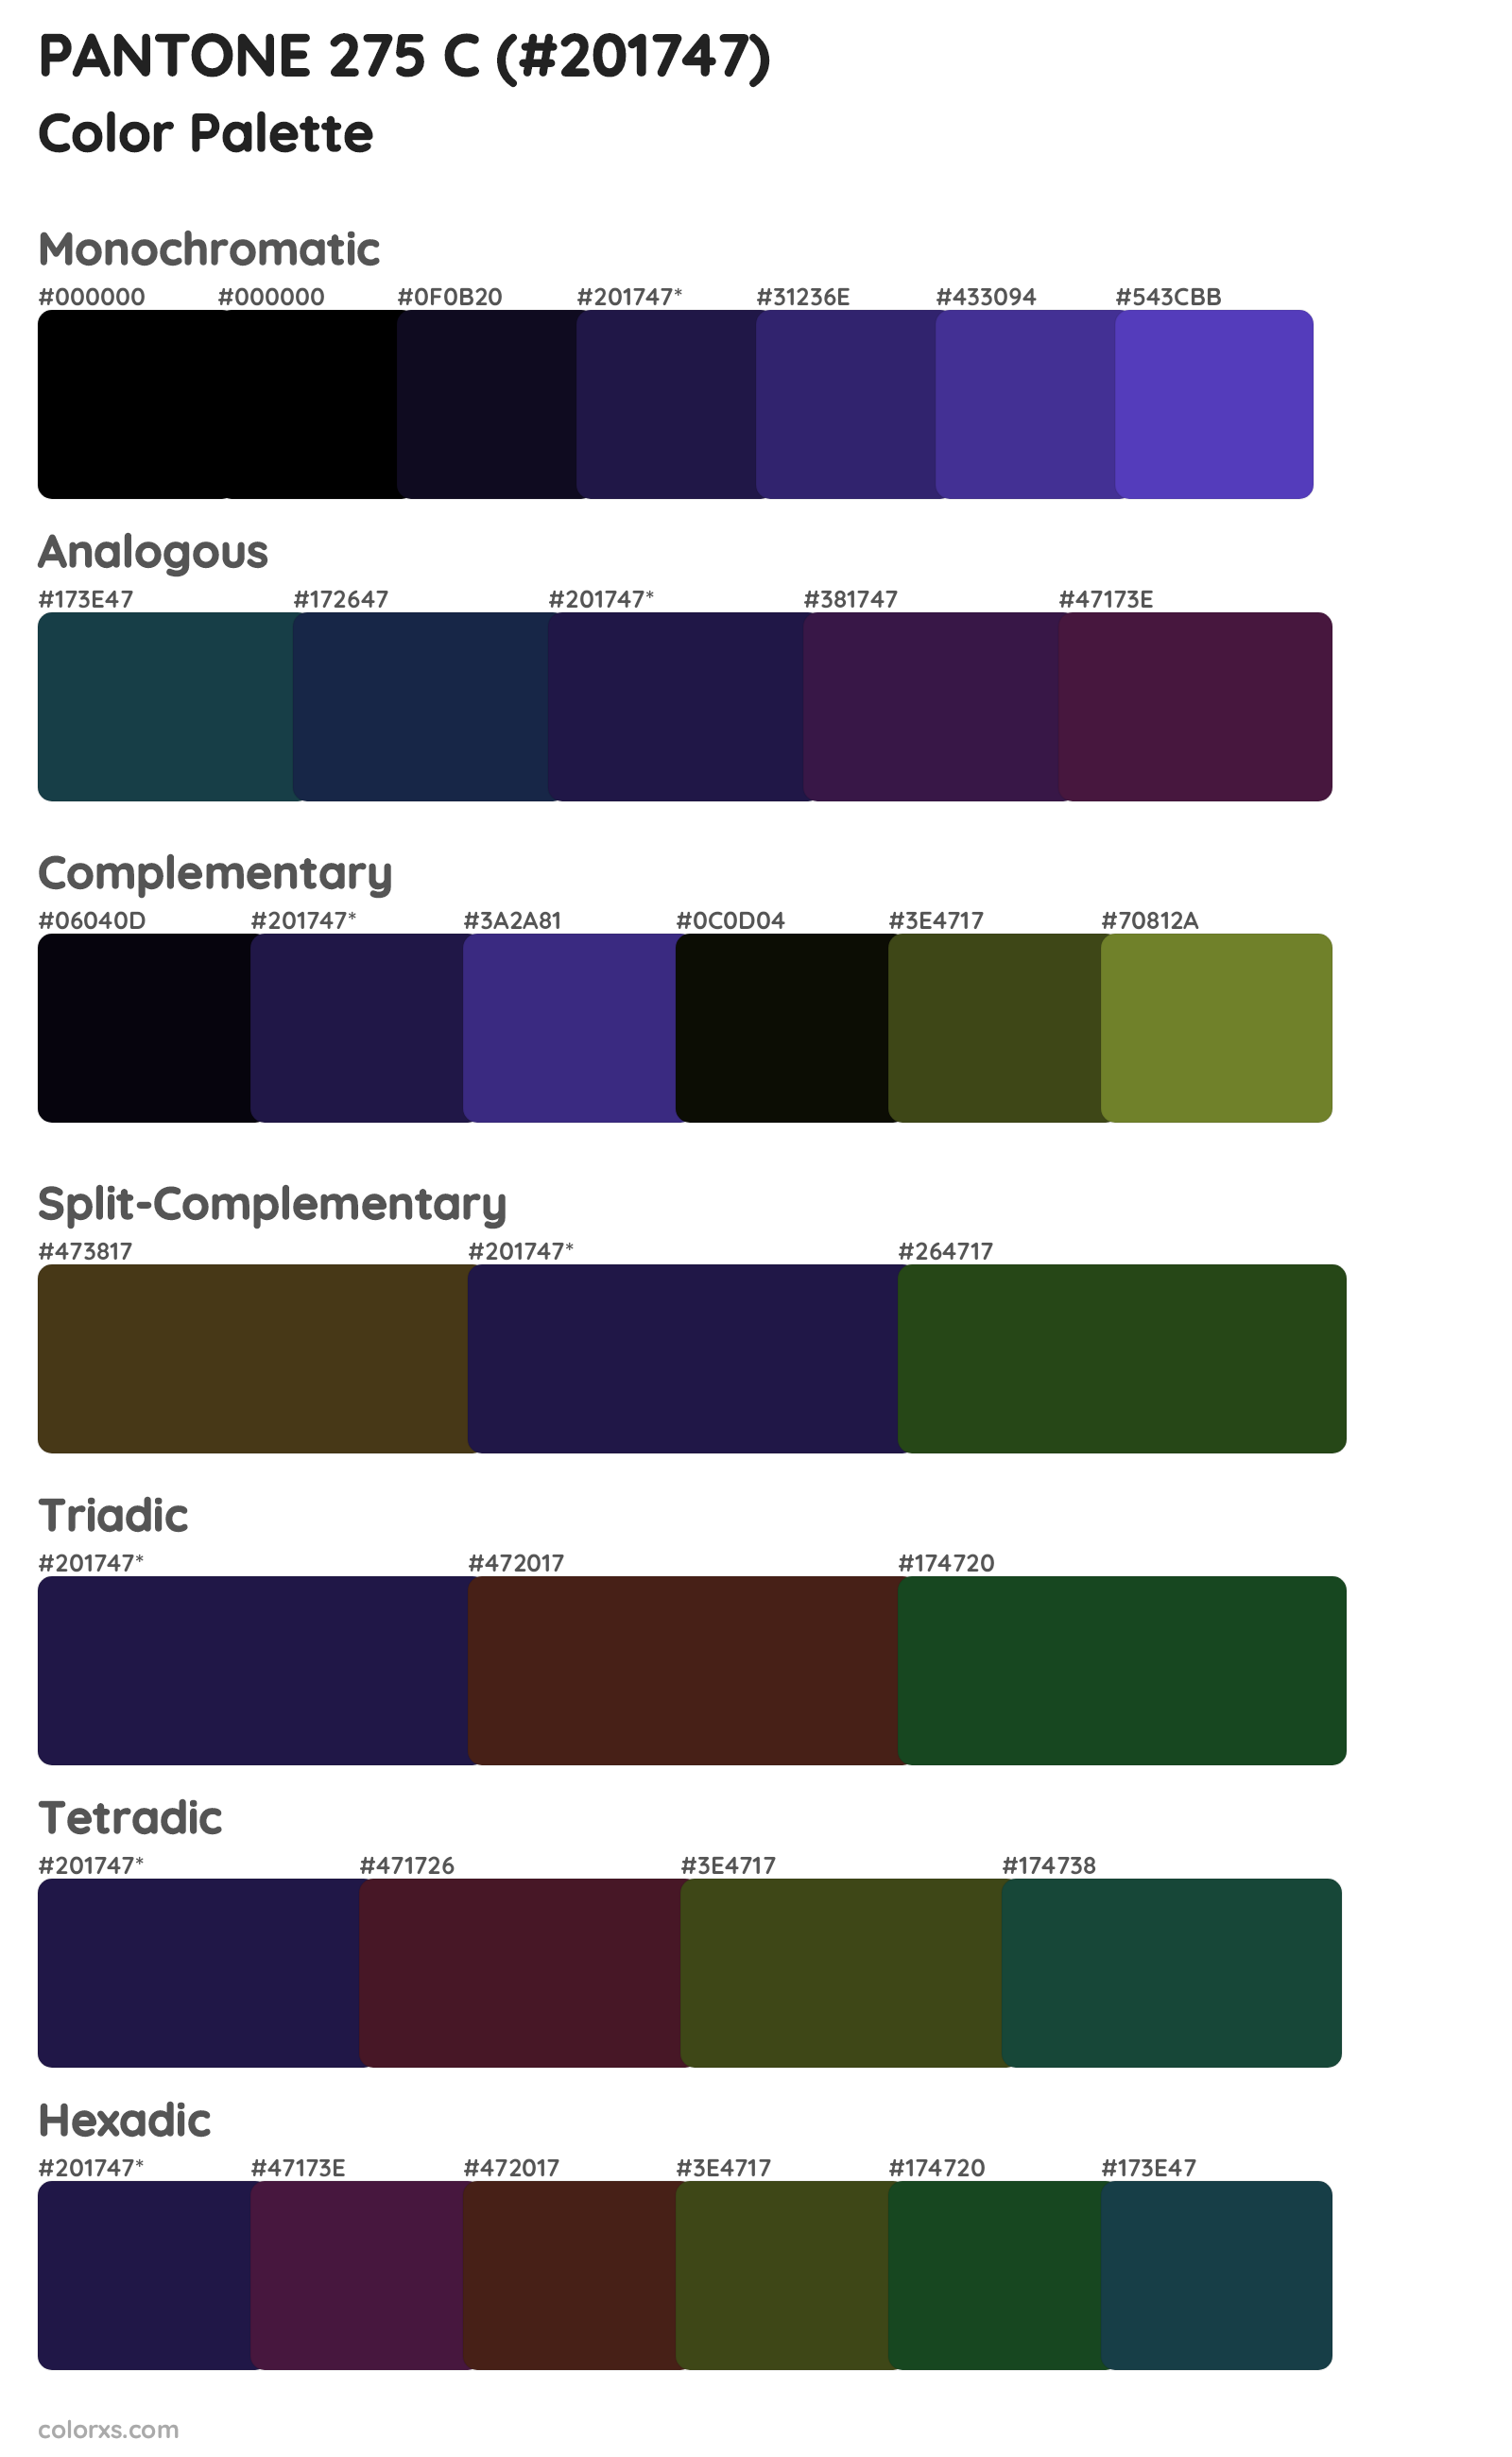 PANTONE 275 C Color Scheme Palettes